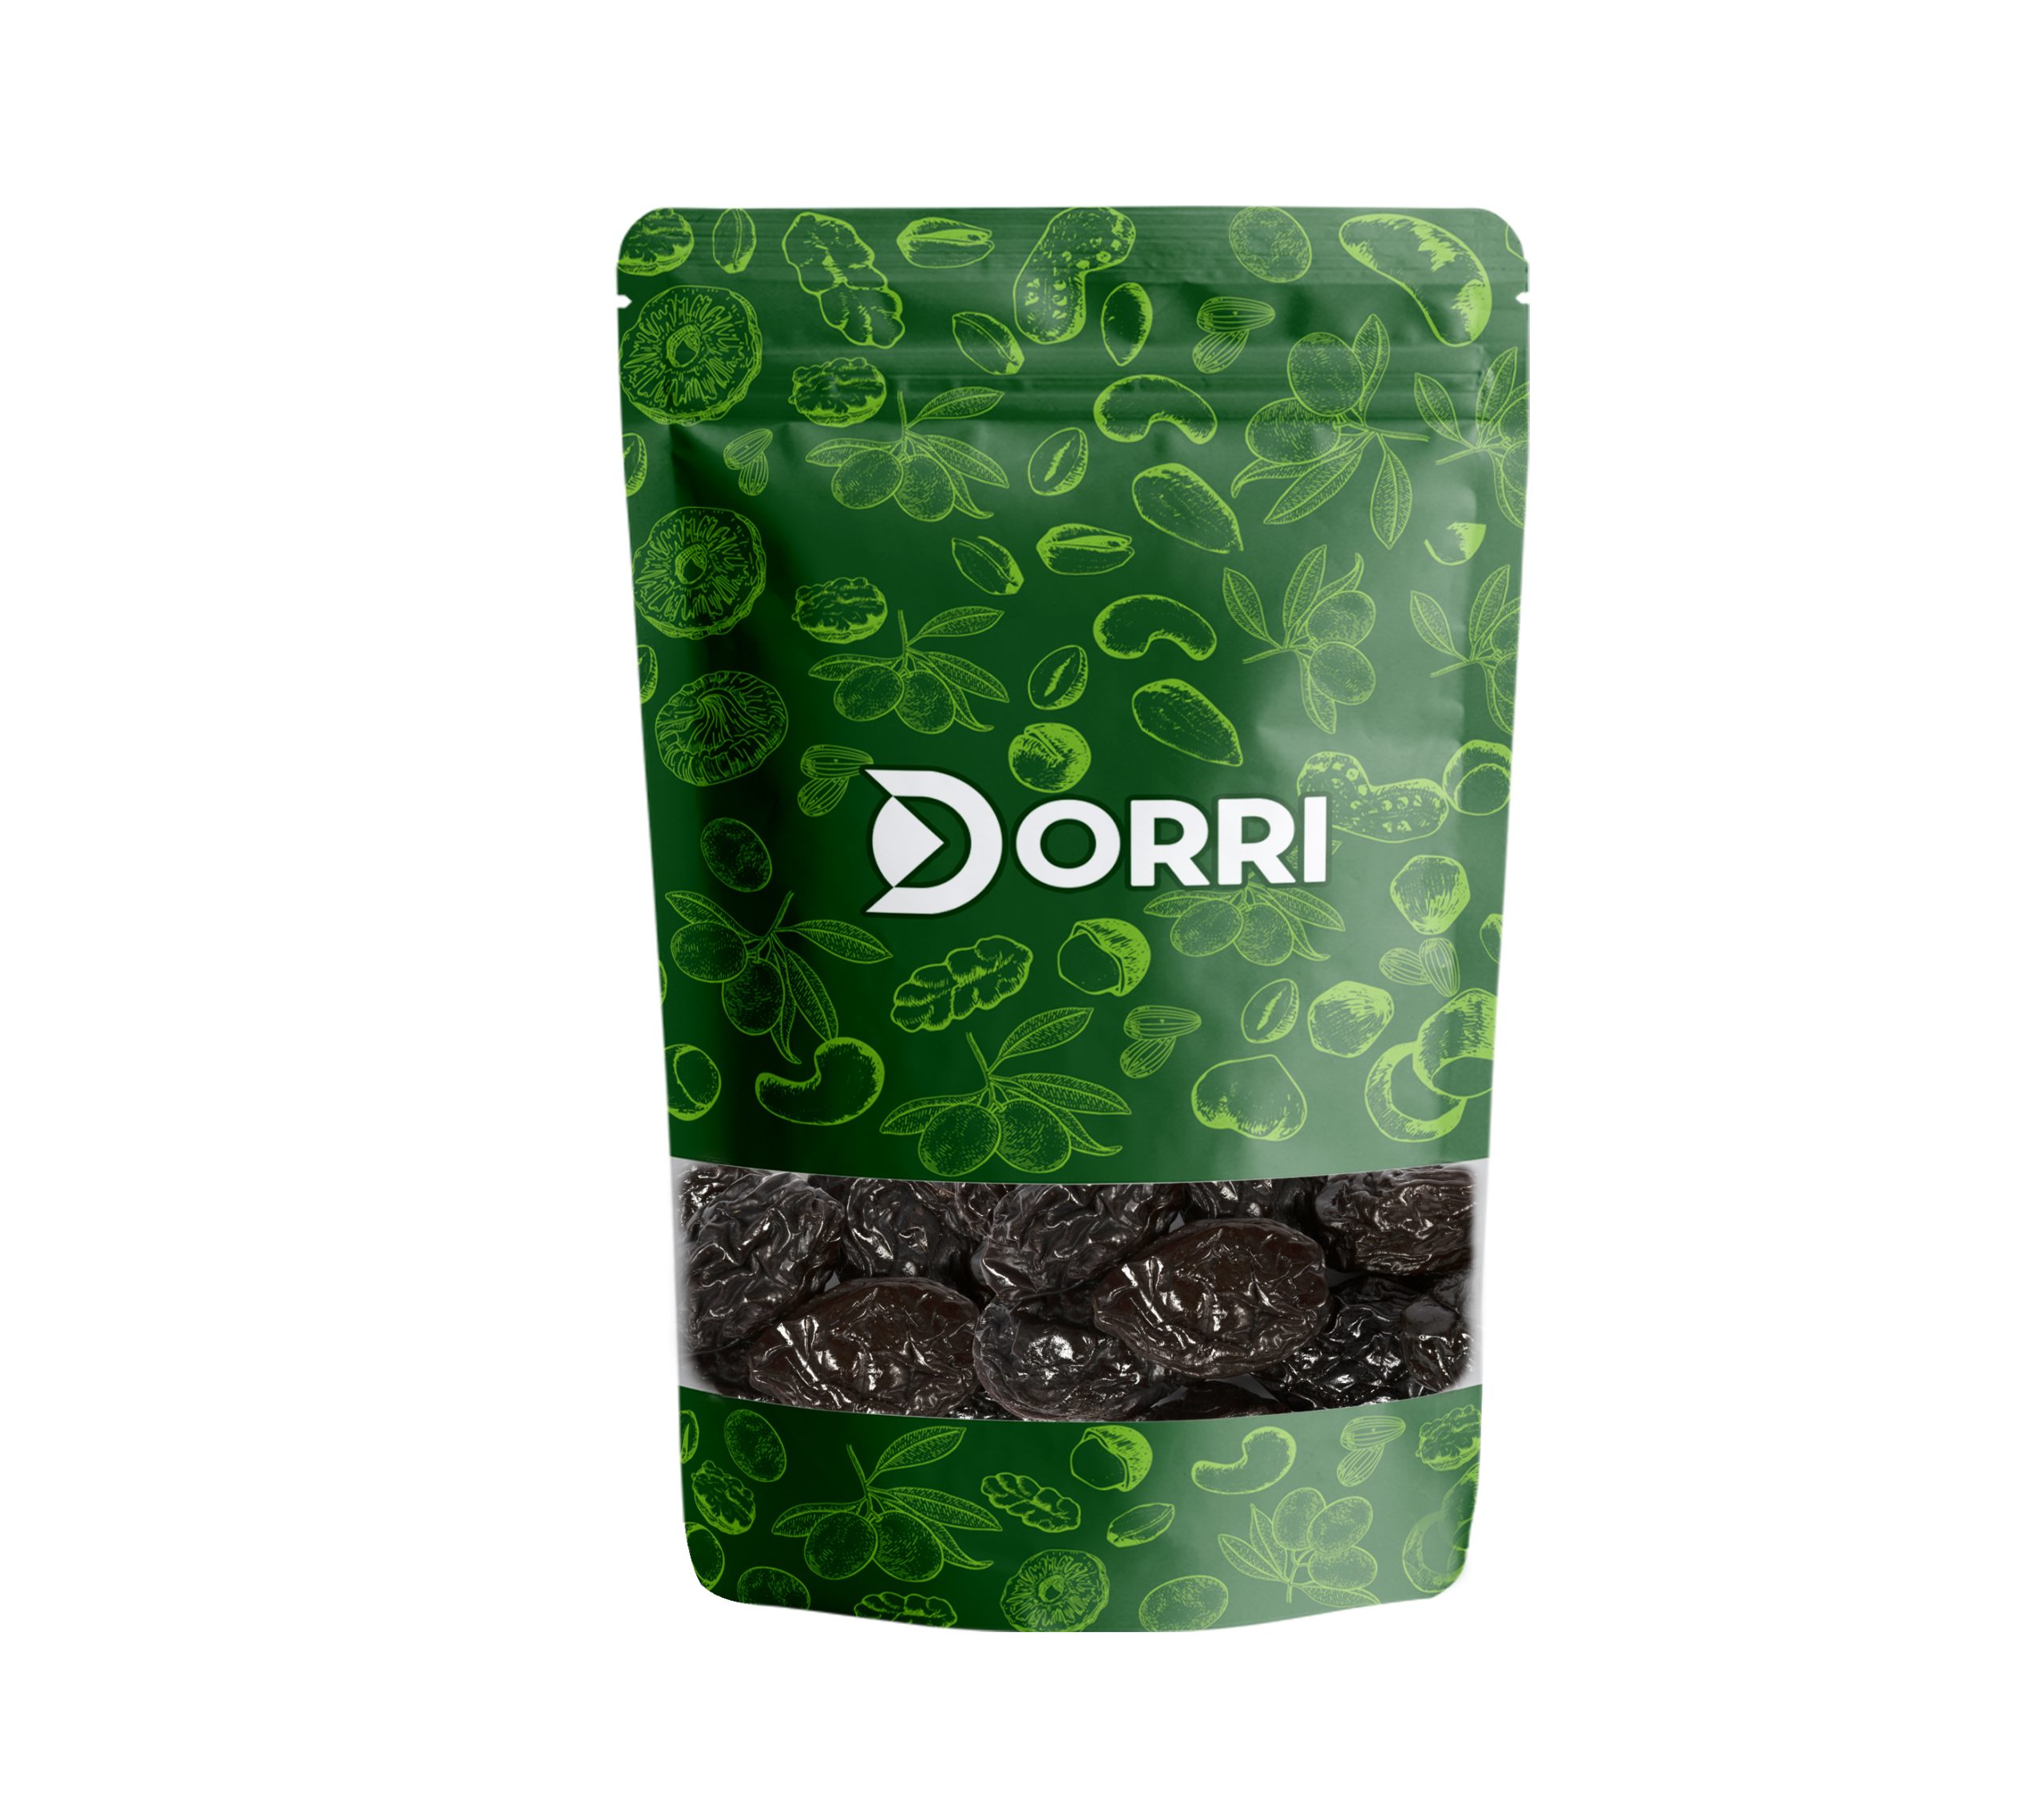 Dorri - Prunes D' Agen (Unpitted)